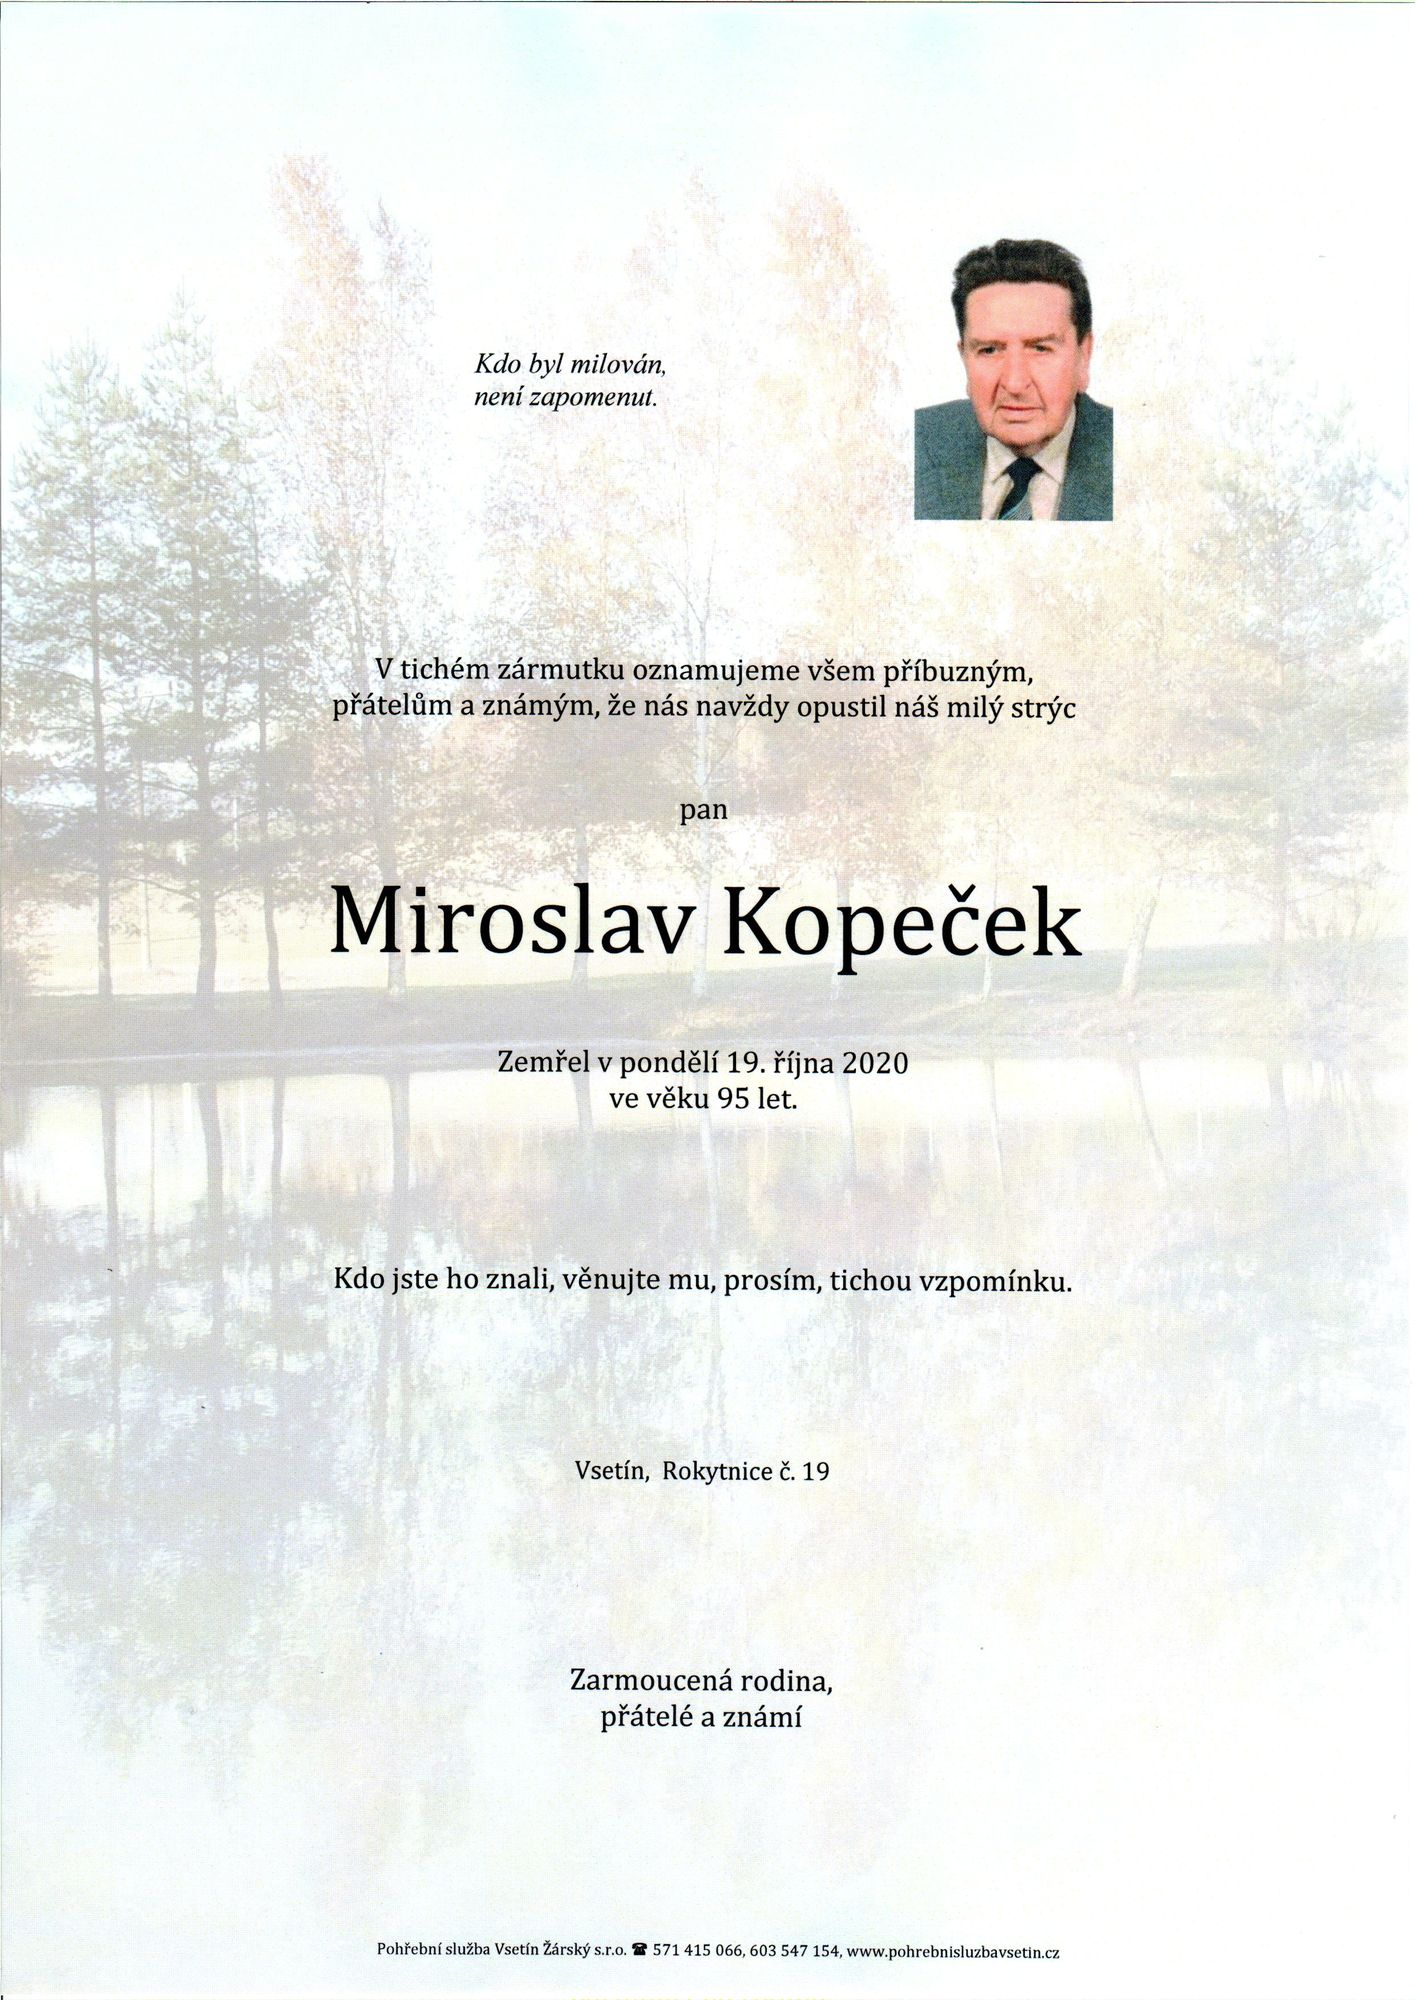 Miroslav Kopeček